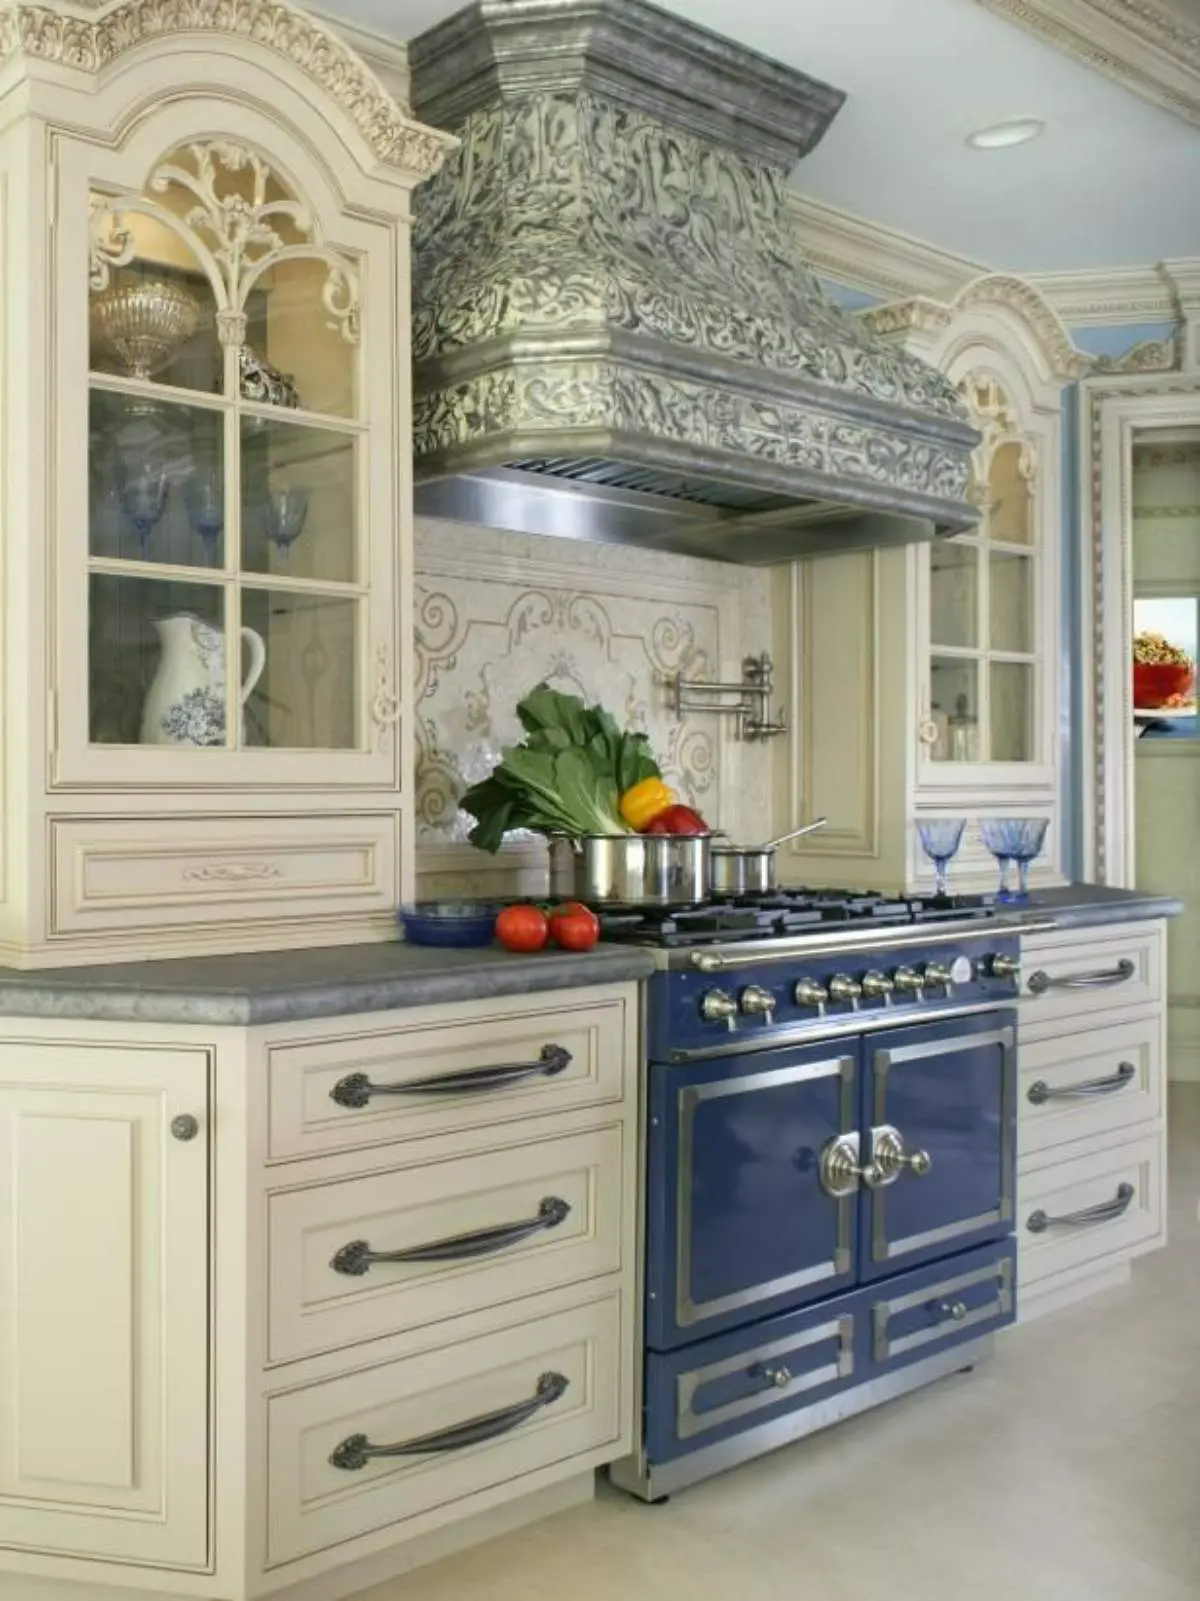 کابینت ویترینی باروک با طرح برگ به سبک کلاسیک و به رنگ سفیدطلایی